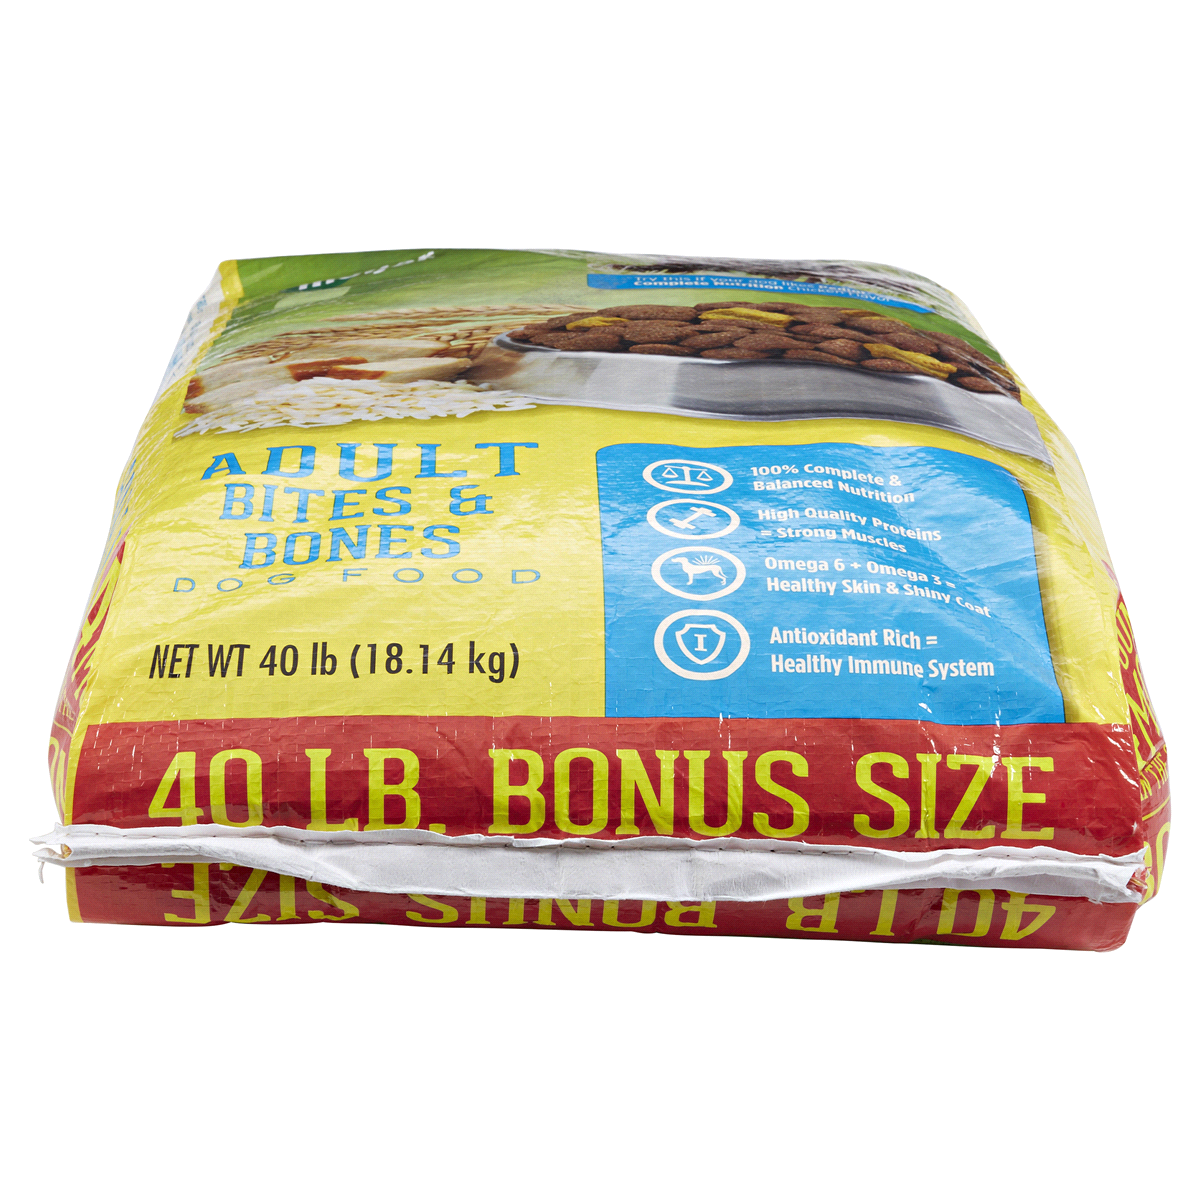 slide 5 of 5, Meijer Adult Bites & Bones Dry Dog Food, 40 lb